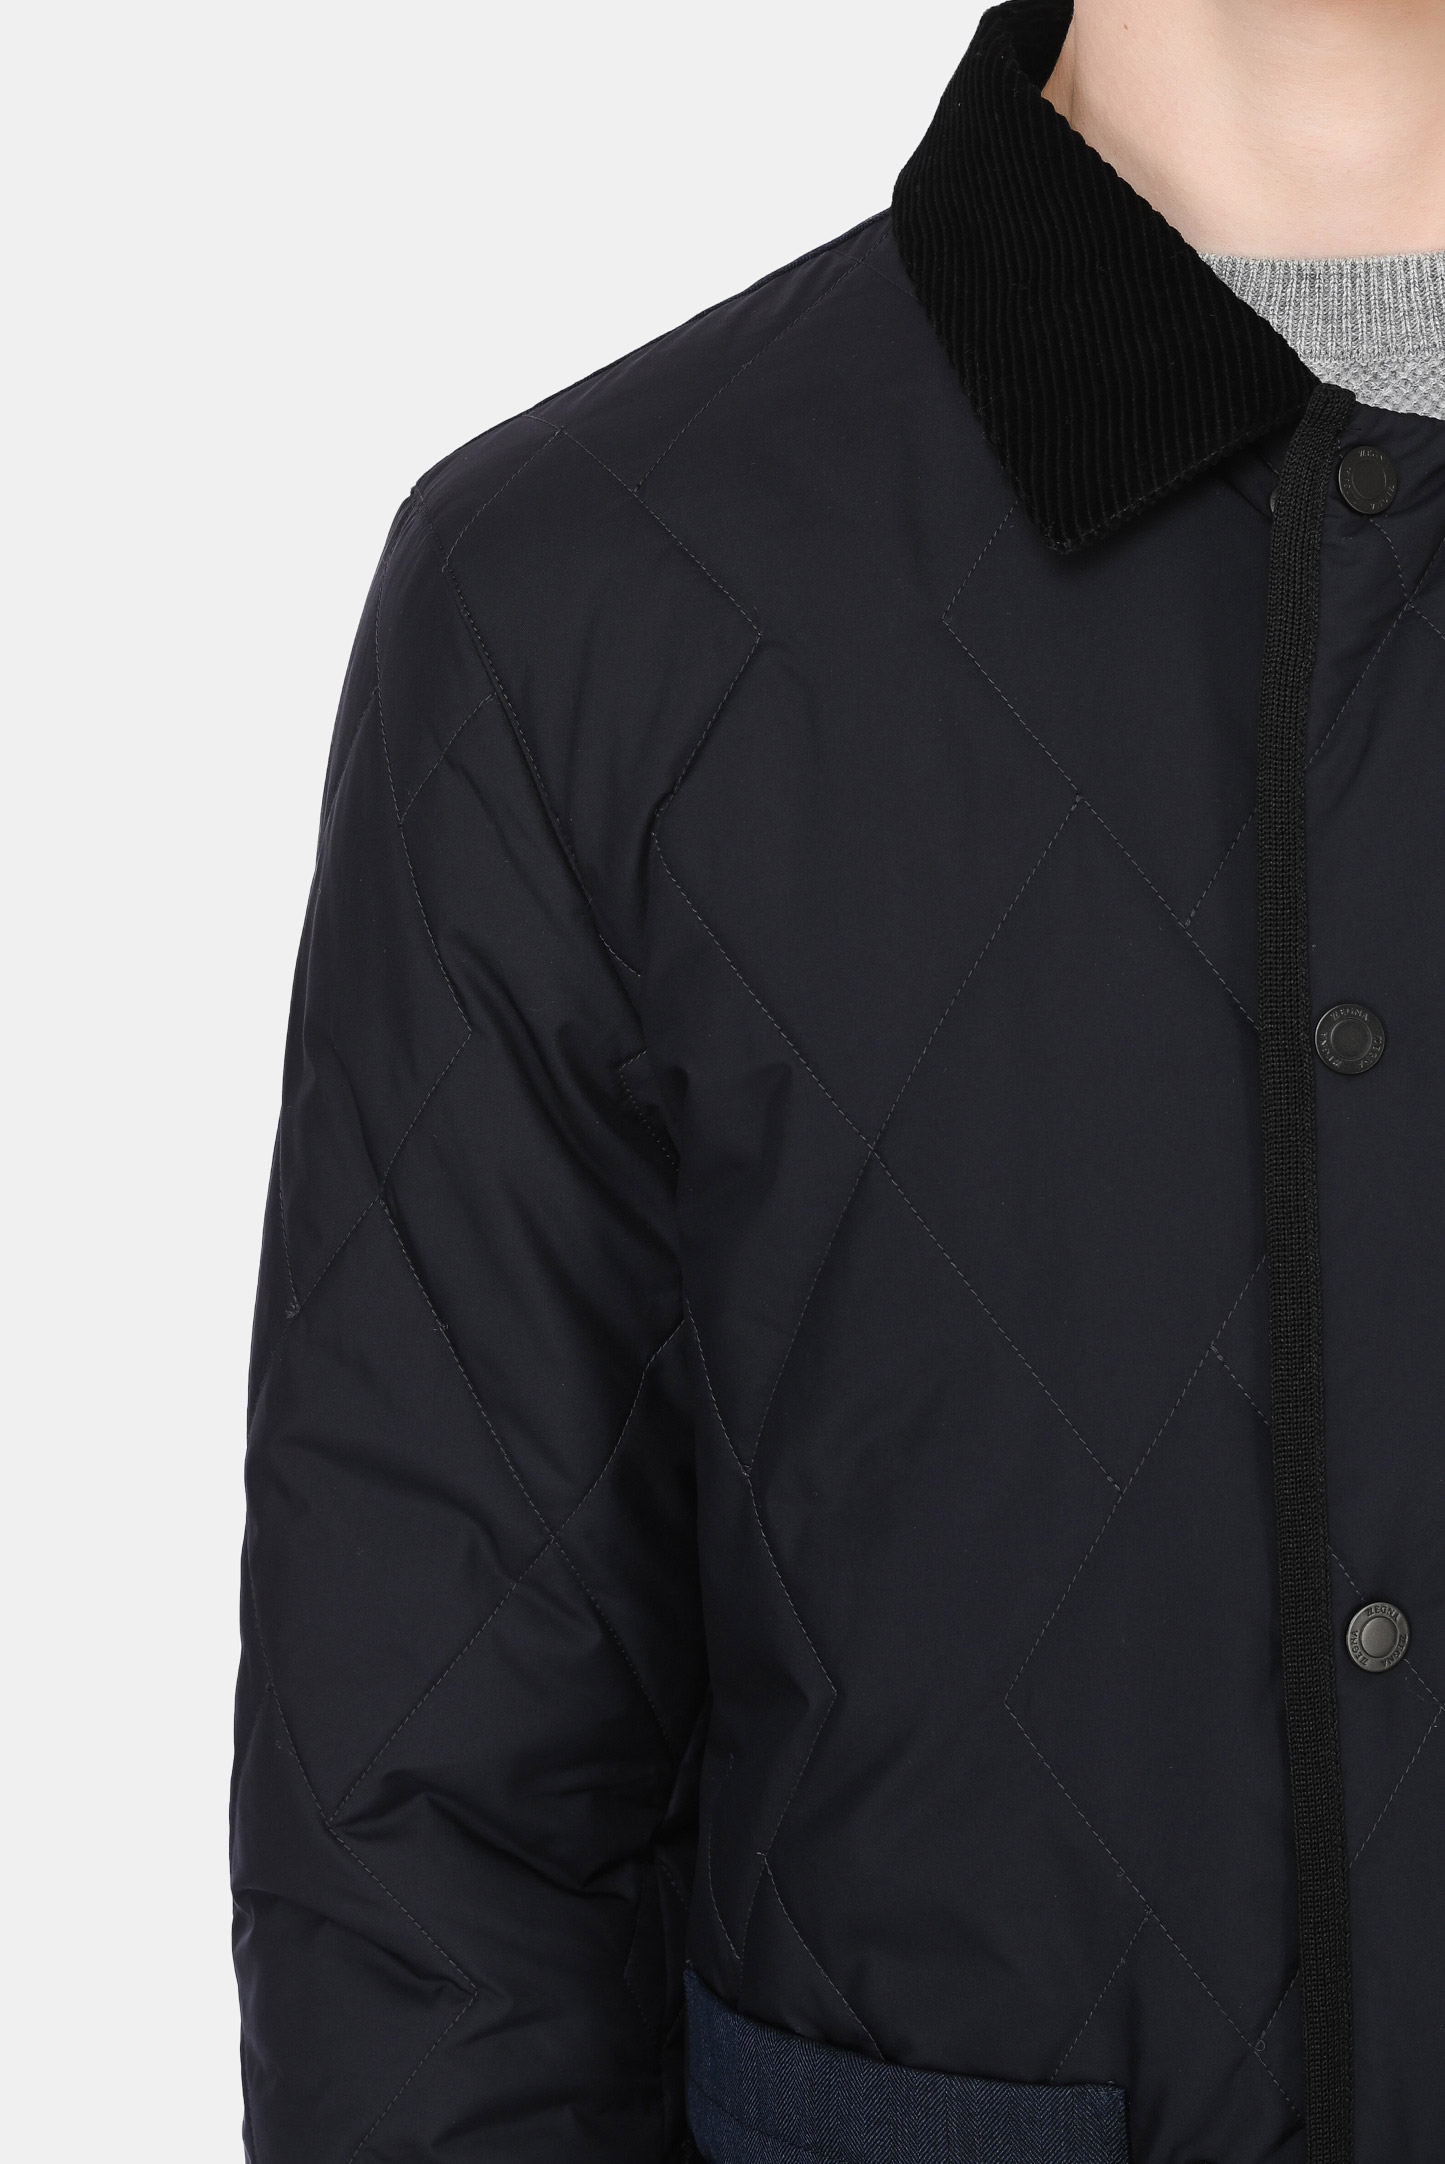 Куртка Z ZEGNA VY023 ZZ122, цвет: Черный, Мужской